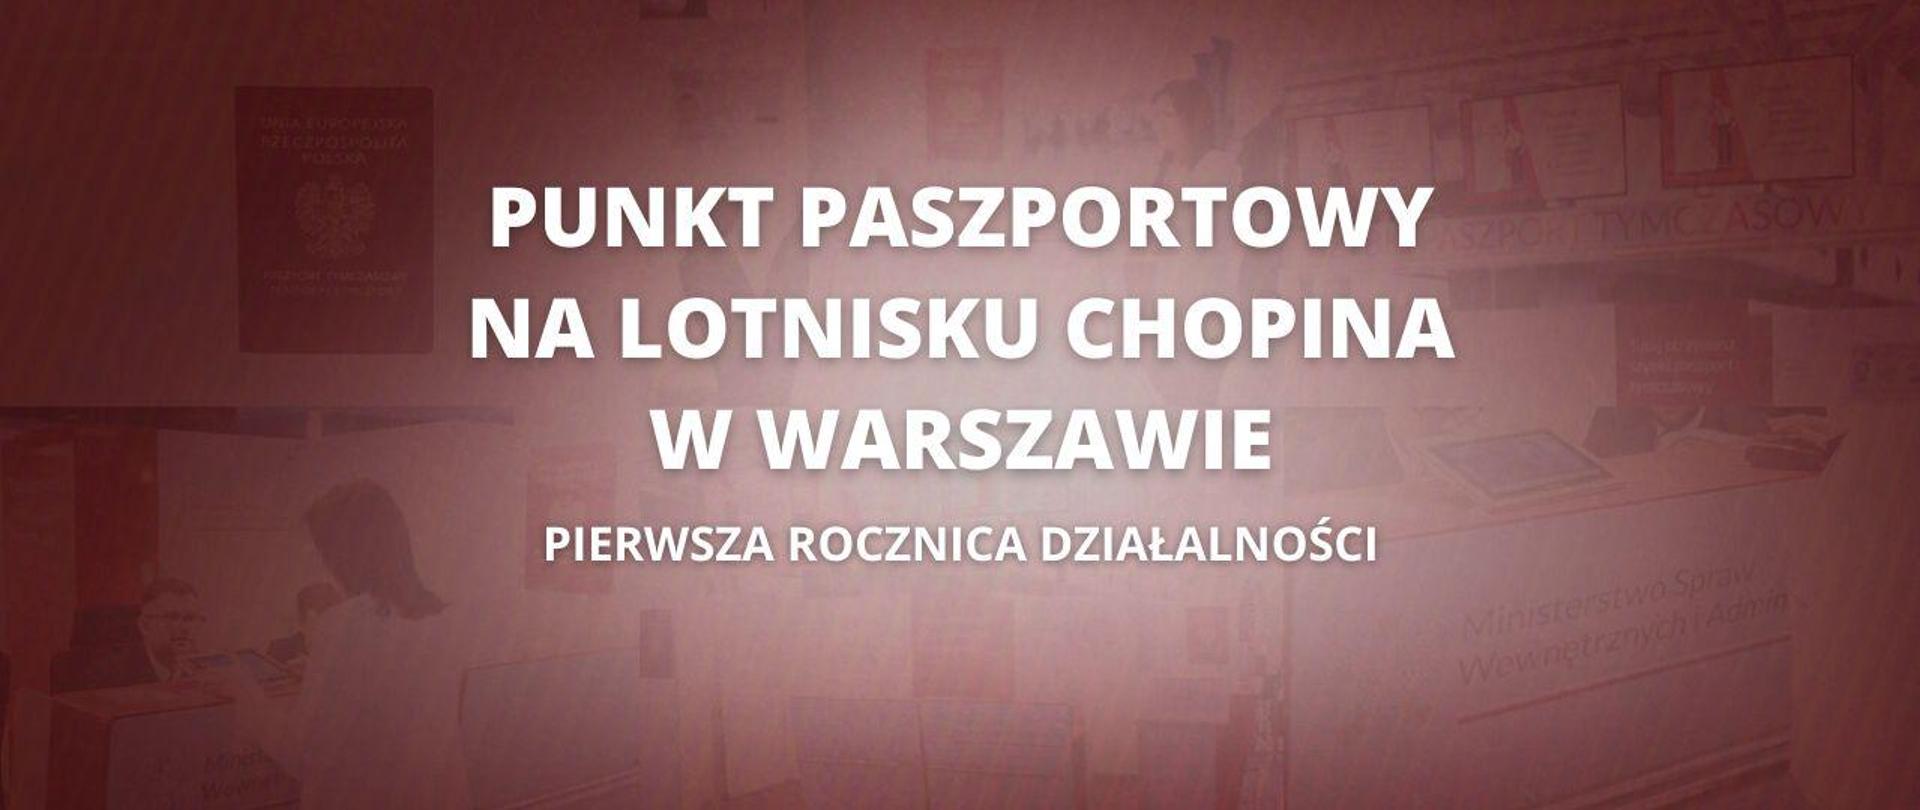 Punkt paszportowy na lotnisku Chopina w Warszawie - pierwsza rocznica działalności 